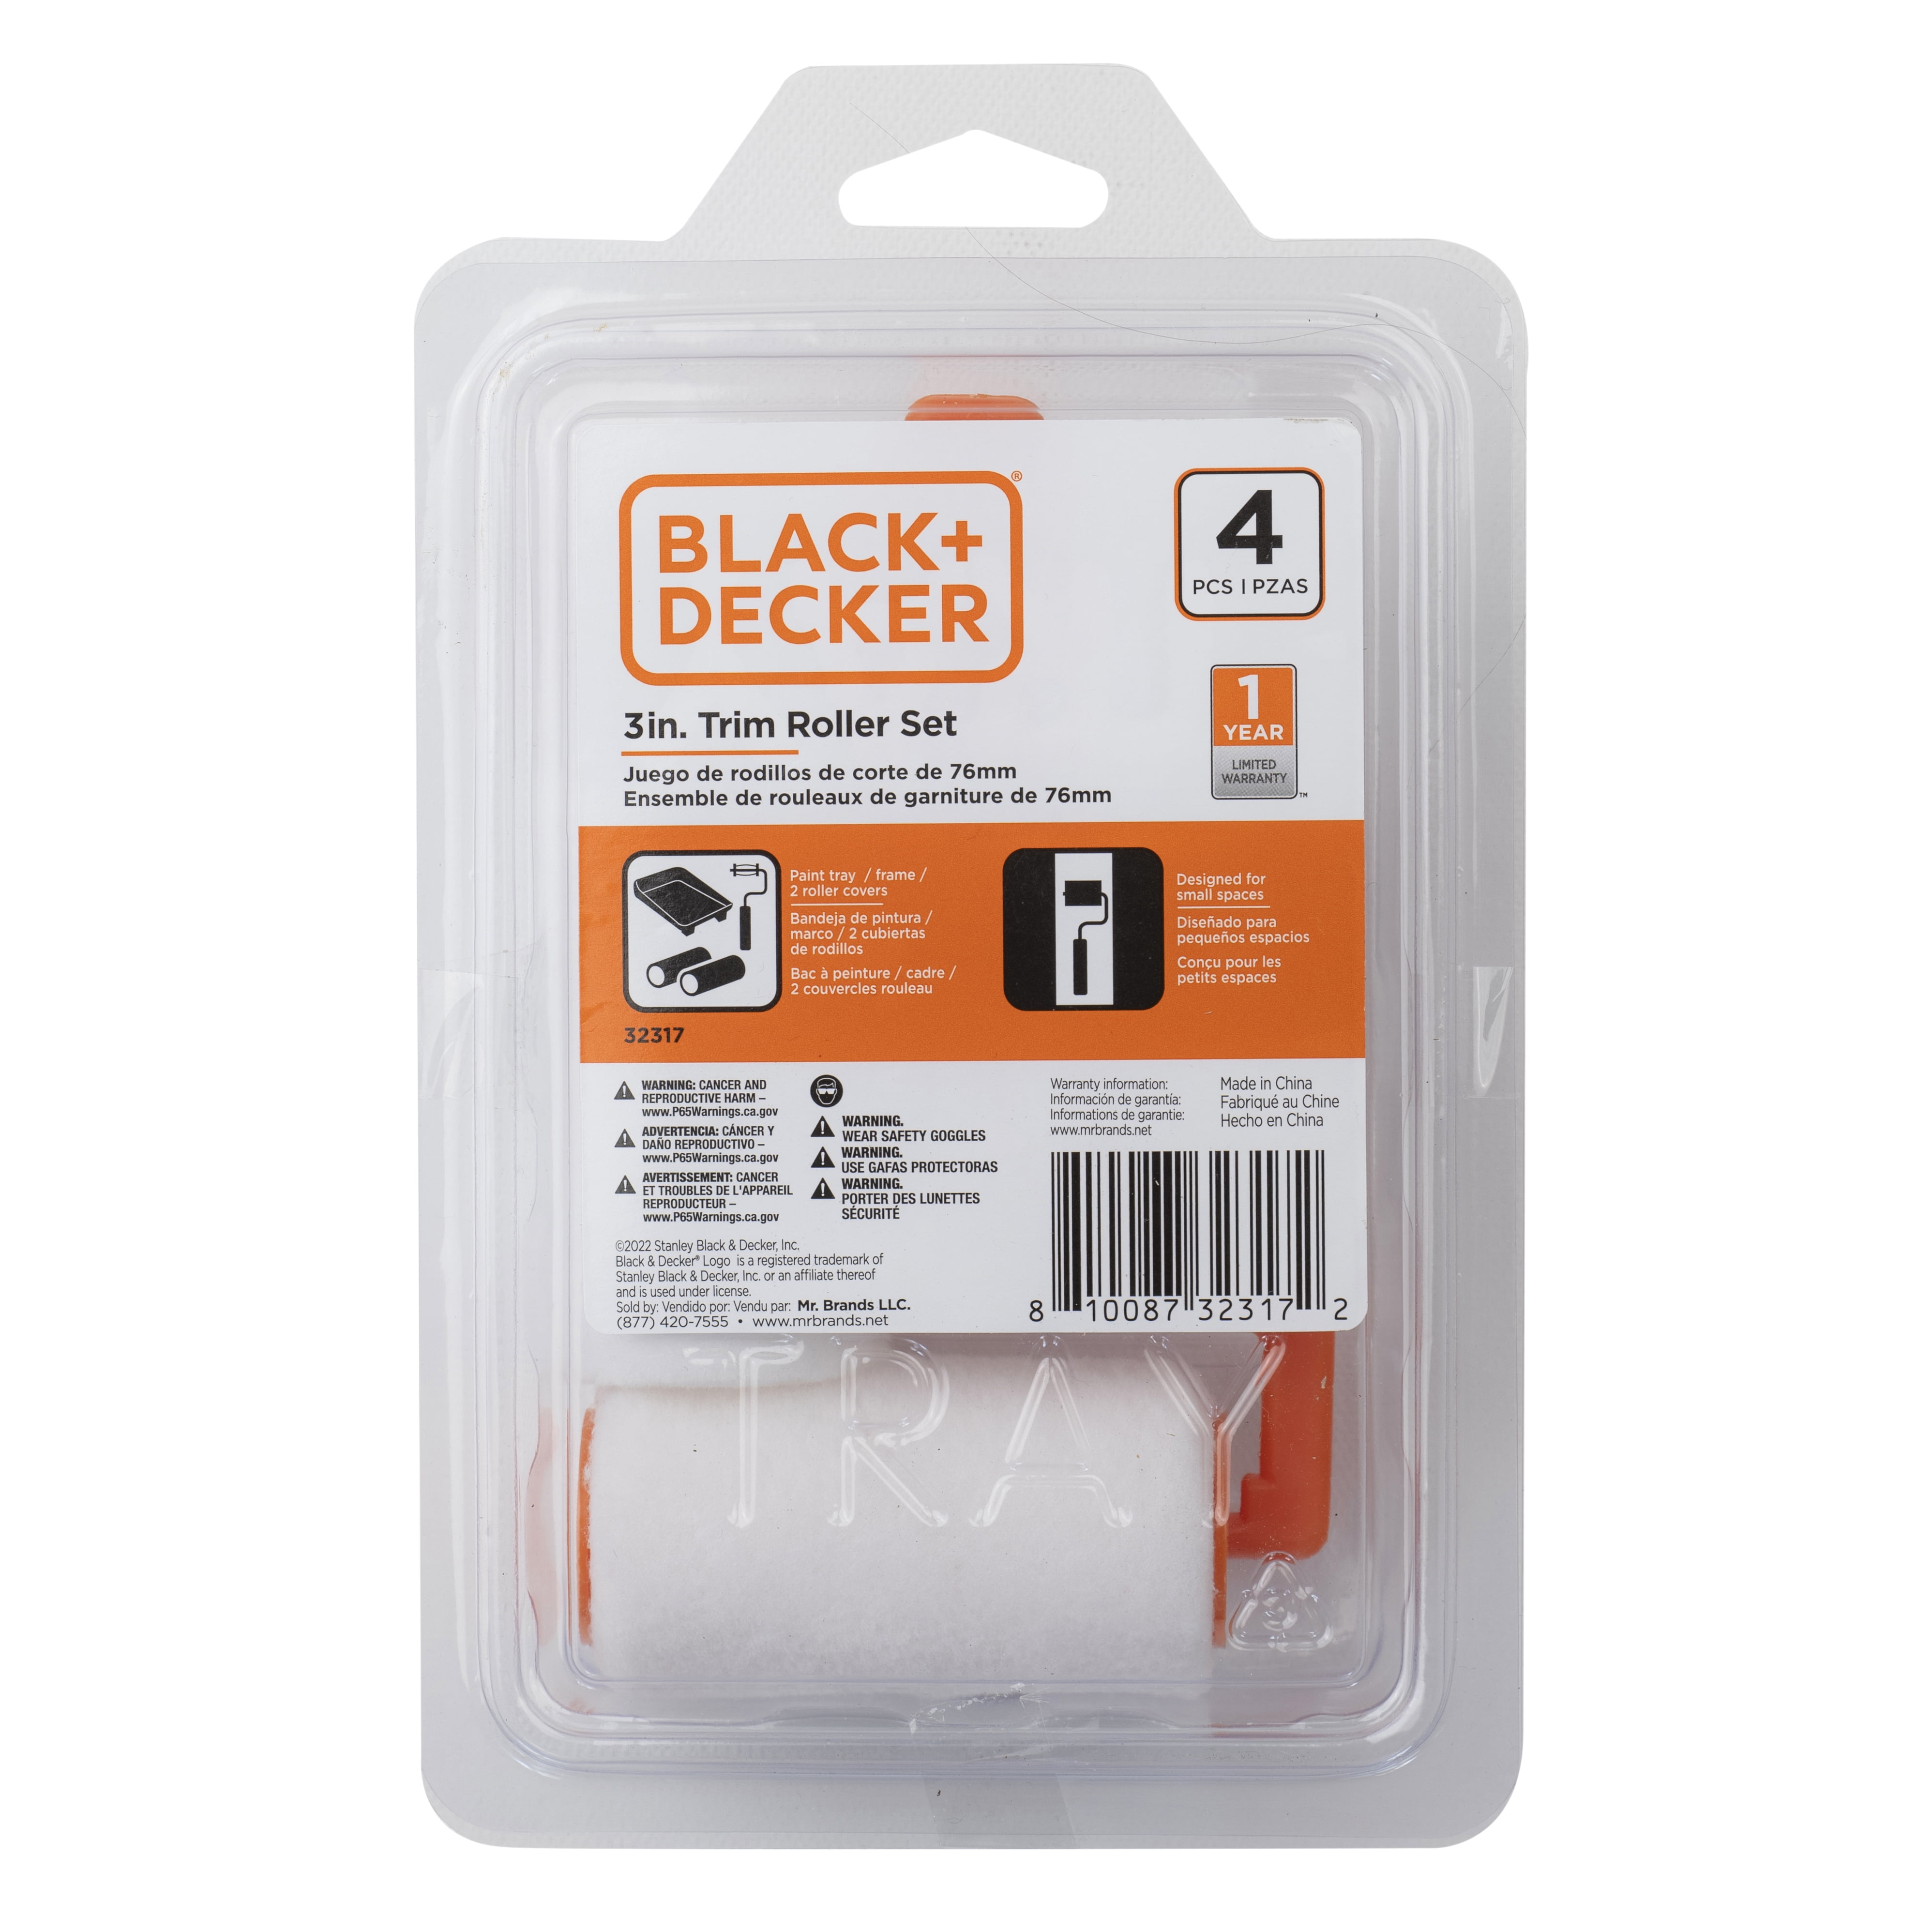 Black & Decker Paint Smart BRC300 Brush & Roller Cleaner System - NEW 